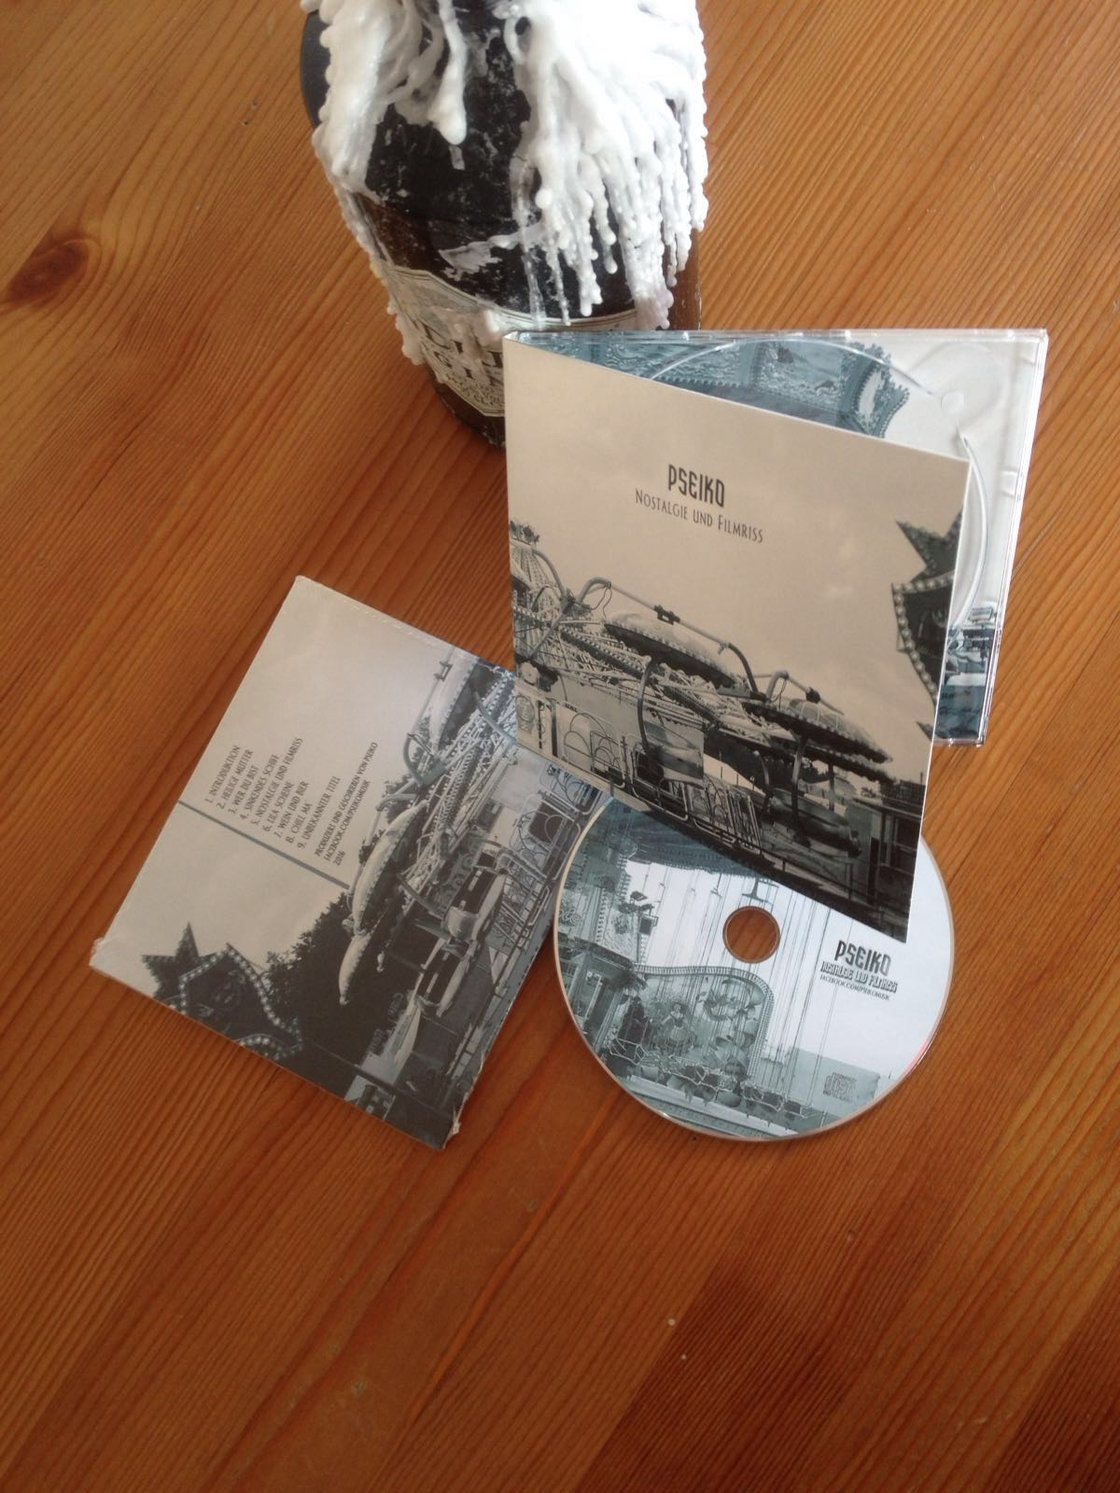 Image of Nostalgie und Filmriss CD